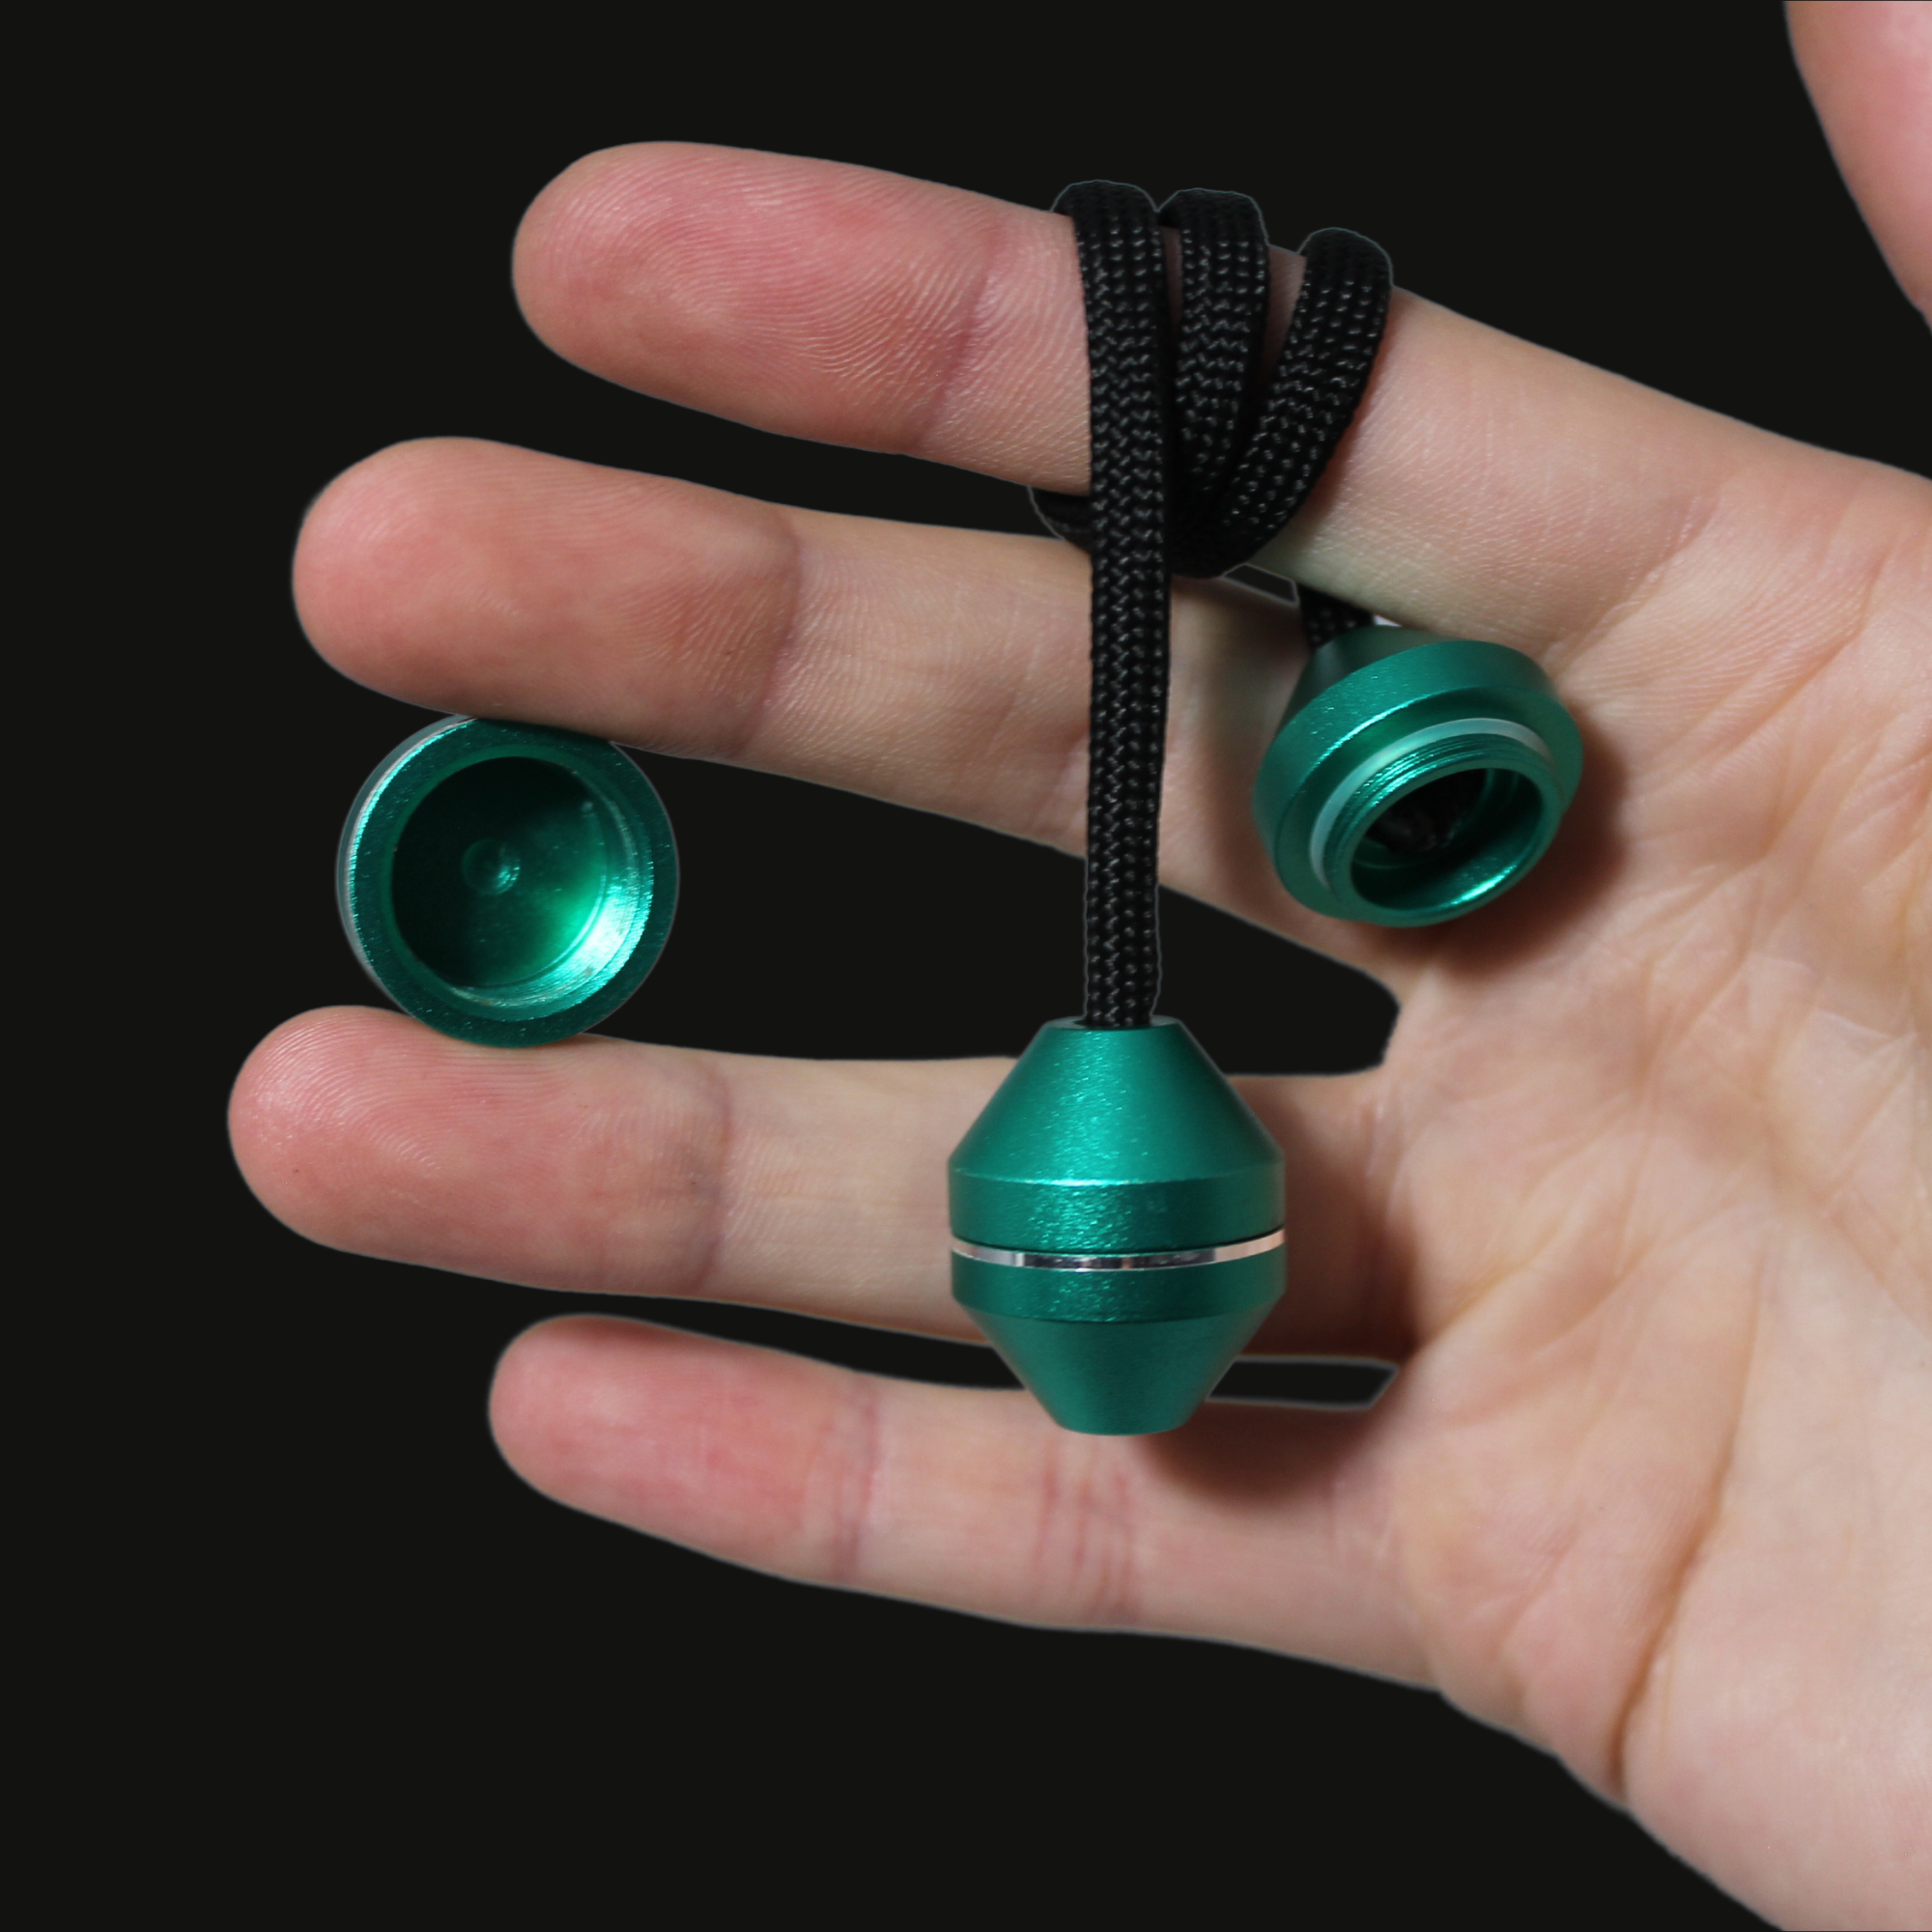 Begleri Fidget Beads - Diamond Green - Spinning Begleri